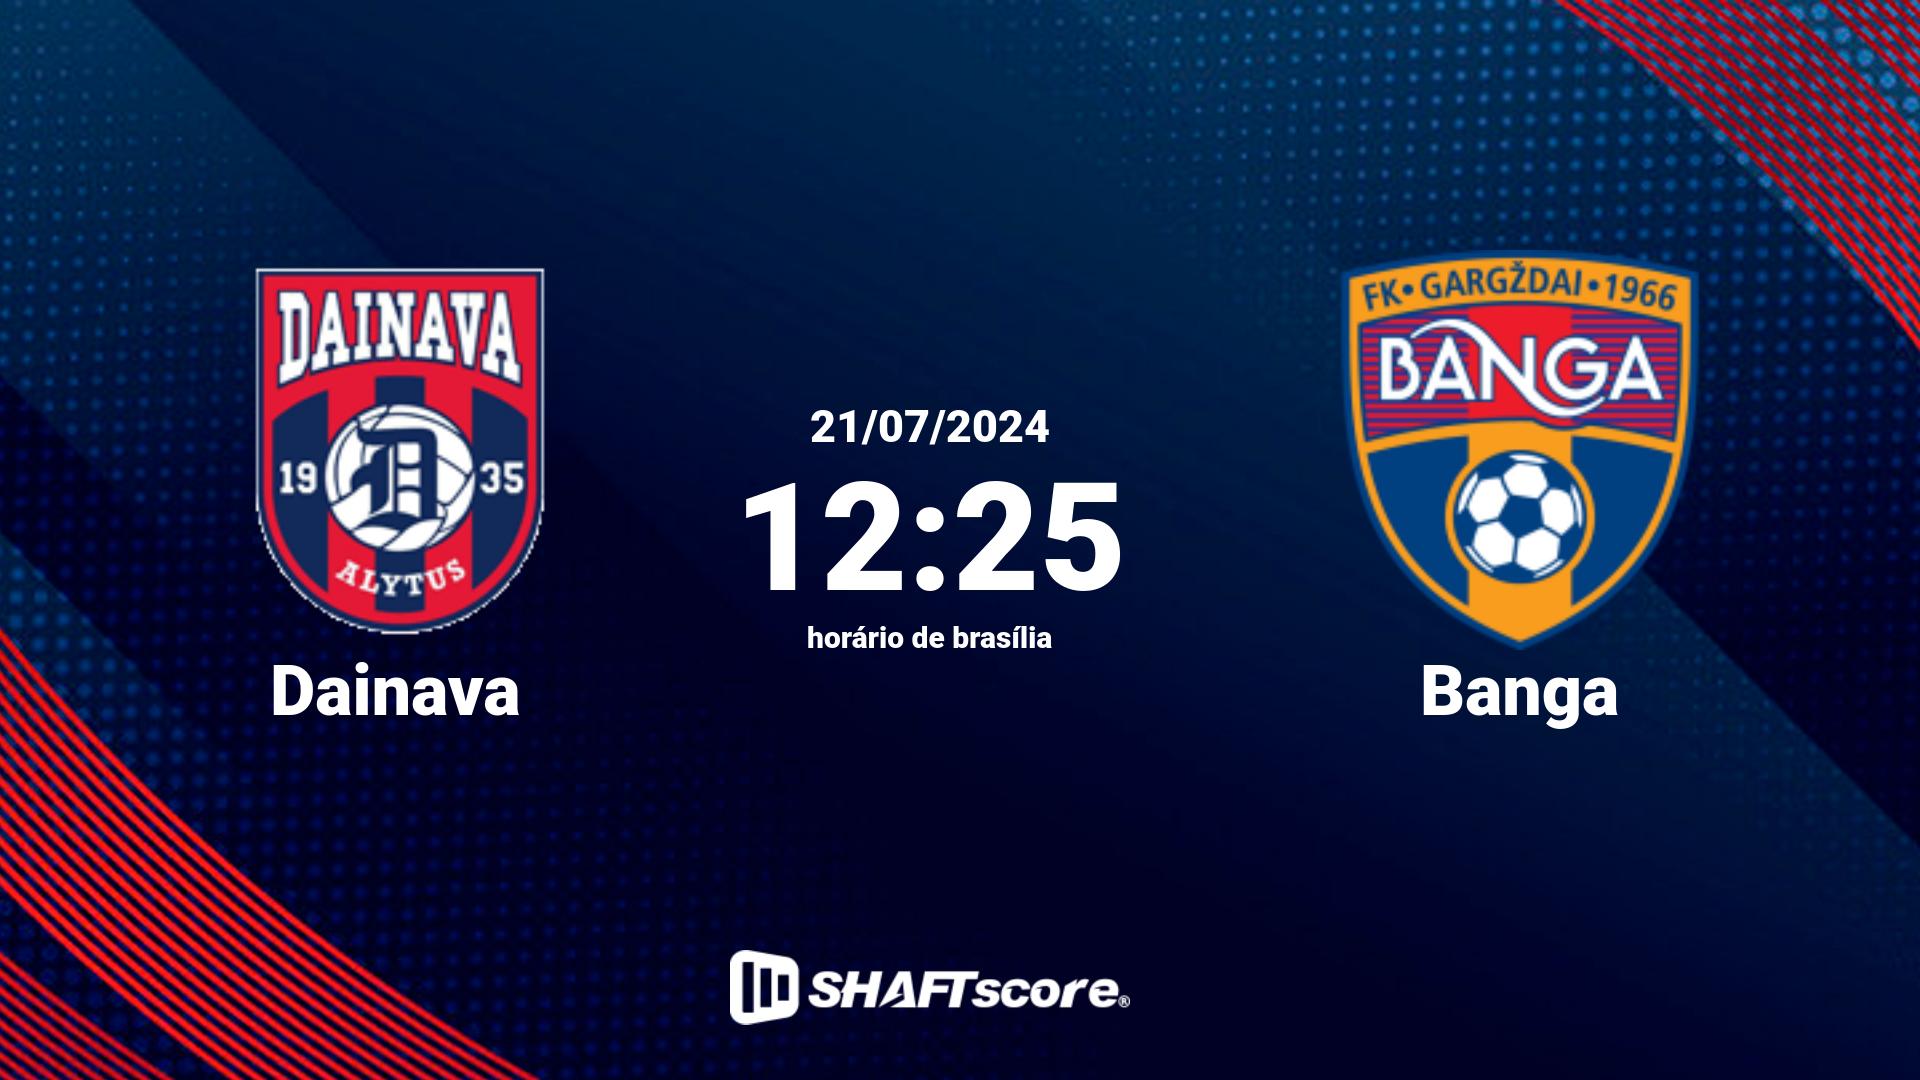 Estatísticas do jogo Dainava vs Banga 21.07 12:25